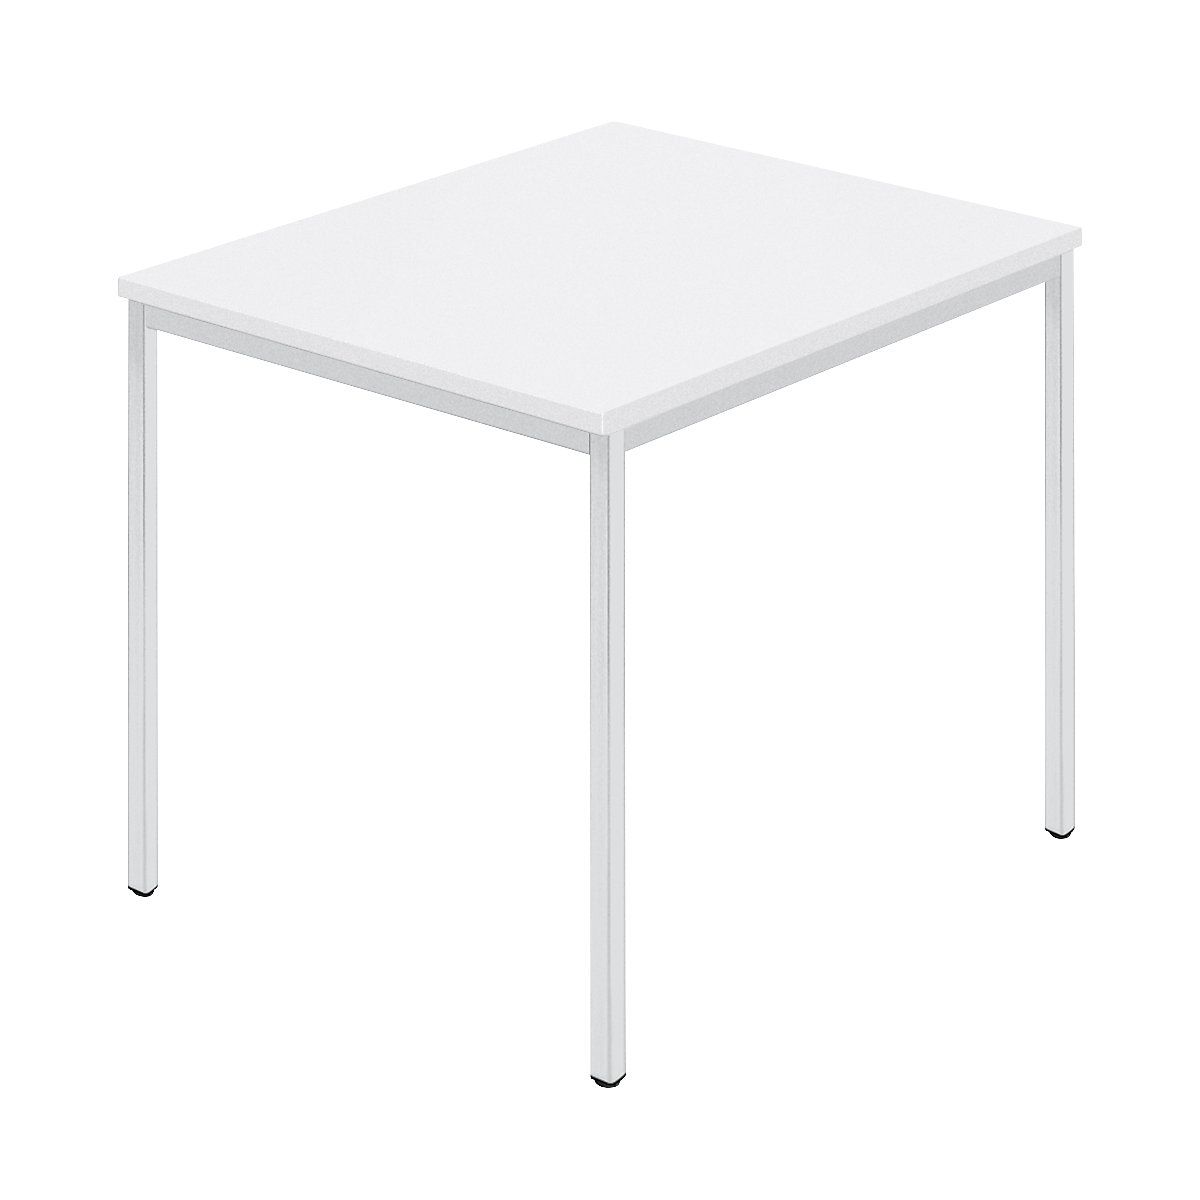 Table rectangulaire, tube carré plastifié, l x p 800 x 800 mm, blanc / gris-6